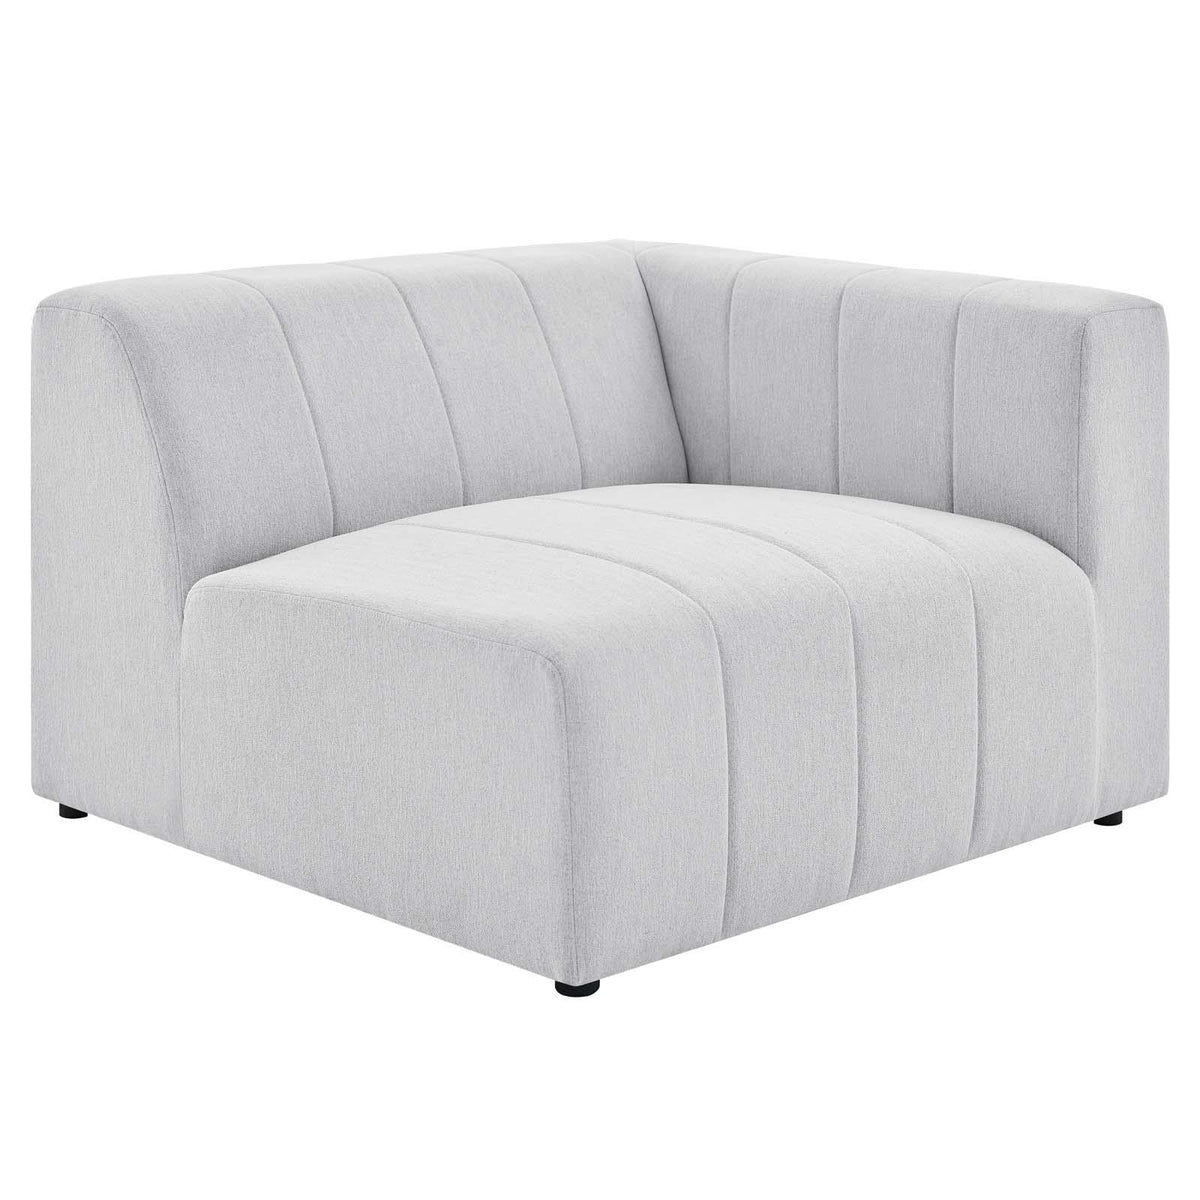 Modway Furniture Modern Bartlett Upholstered Fabric 5-Piece Sectional Sofa - EEI-4531